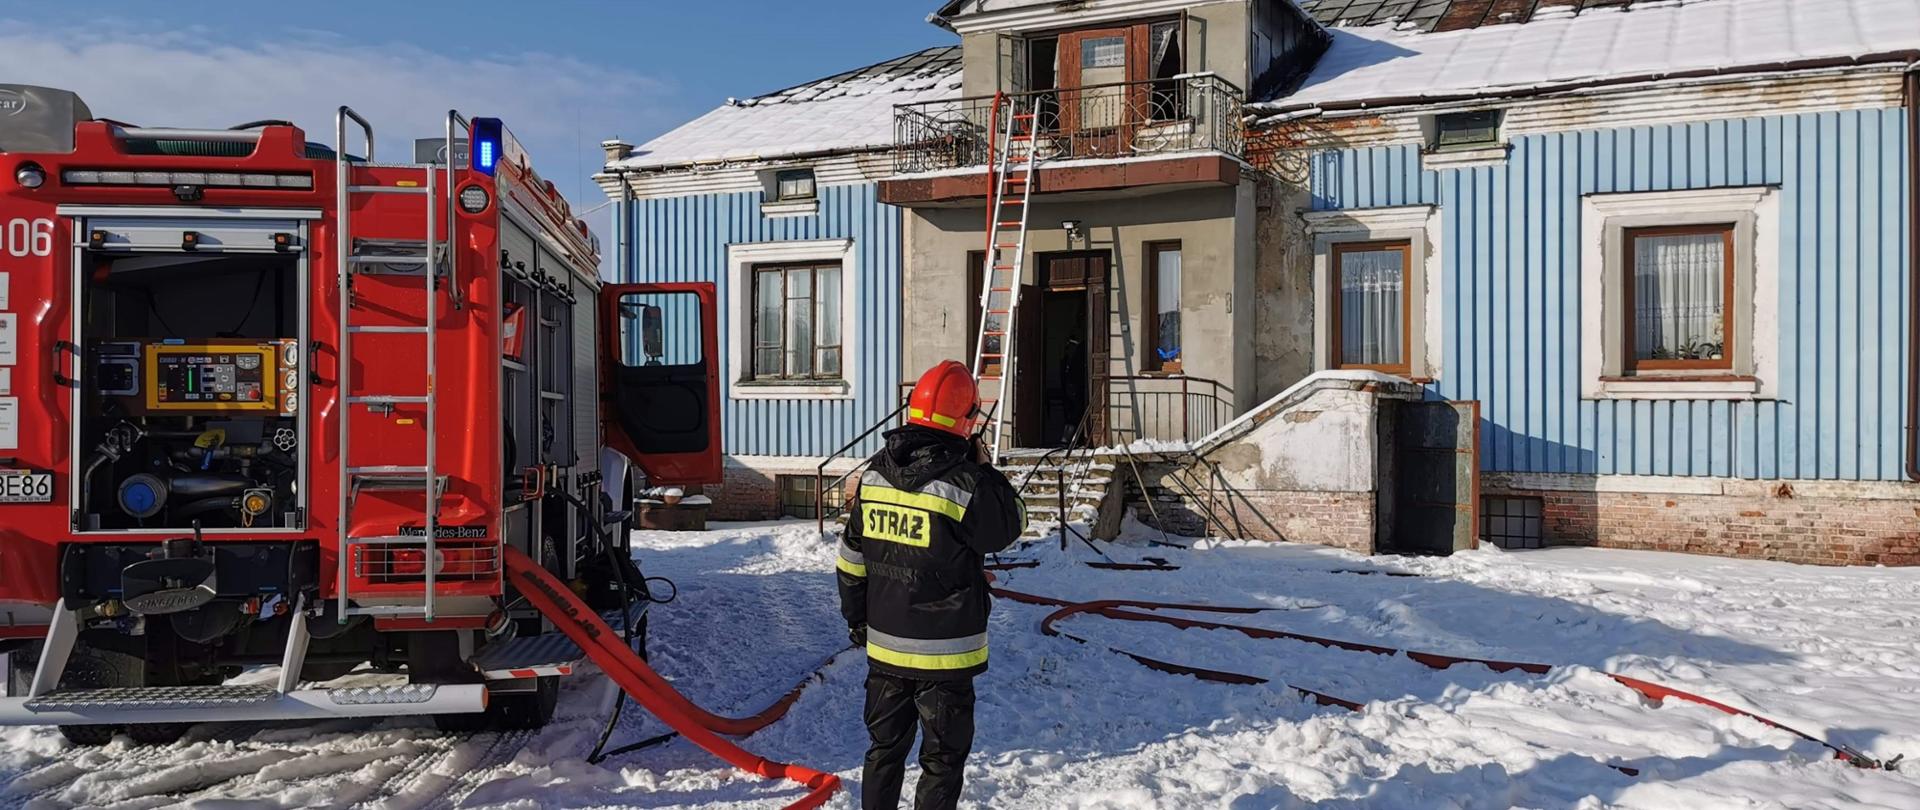 Zdjęcie przedstawia stojącego tyłem do fotografa, ubranego w strój strażacki oraz hełm, strażaka, znajdującego się na zewnątrz domu jednorodzinnego, zwróconego przodem do budynku, rozmawiającego przez krótkofalówkę. Na lewo od strażaka stoi samochód strażacki ustawiany przodem w kierunku domu. Na ziemi (na śniegu) widać rozwinięte czerwone węże strażackie wychodzące z samochodu strażackiego. Dom jednorodzinny jest w kształcie prostokąta, posiada piwnicę, parter oraz małe poddasze z balkonem od frontu domu. Budynek jest niebieski. Okna balkonowe oraz drzwi wejściowe są otwarte.